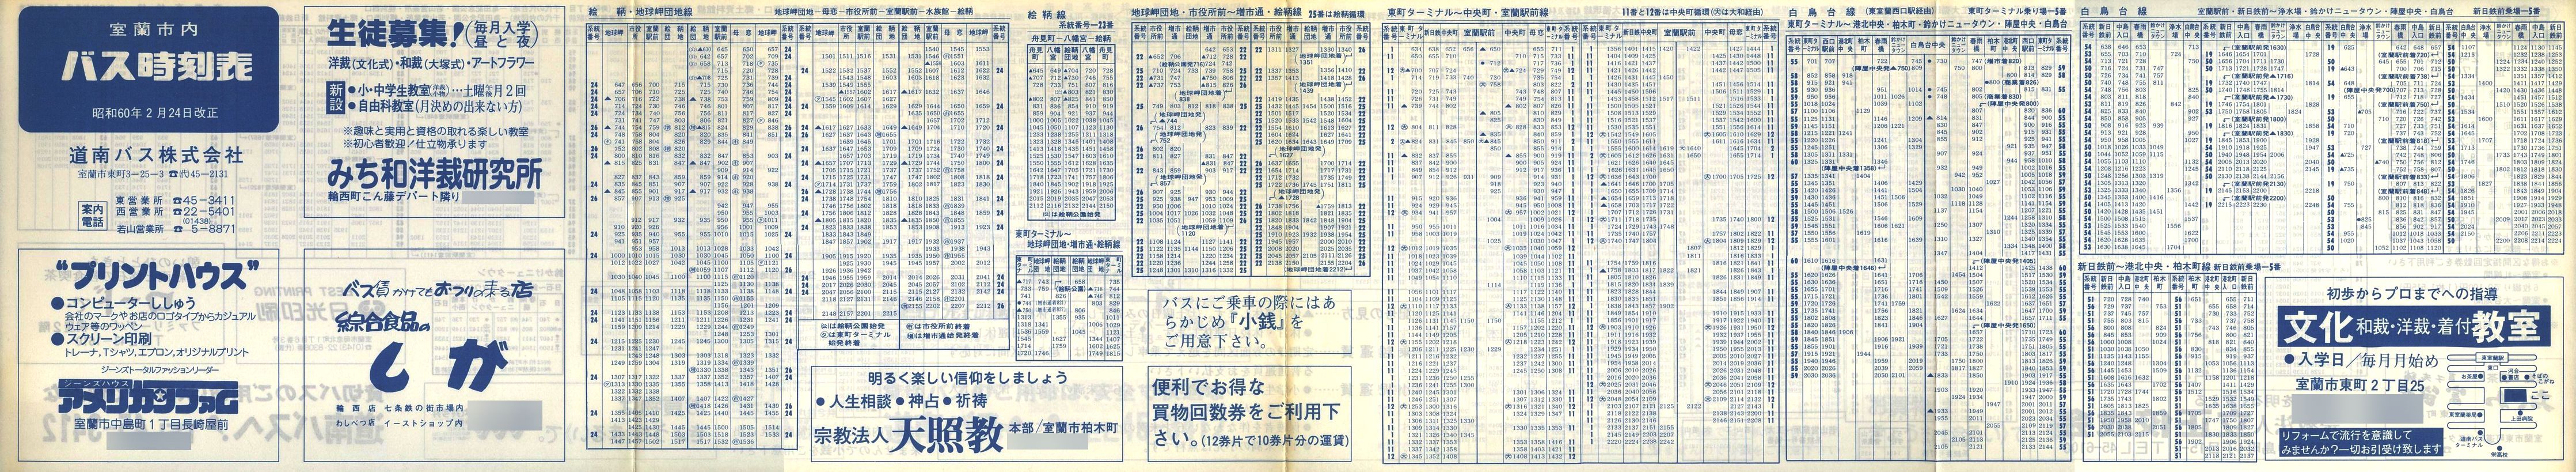 1985-02-24改正_道南バス_室蘭市内線時刻表表面